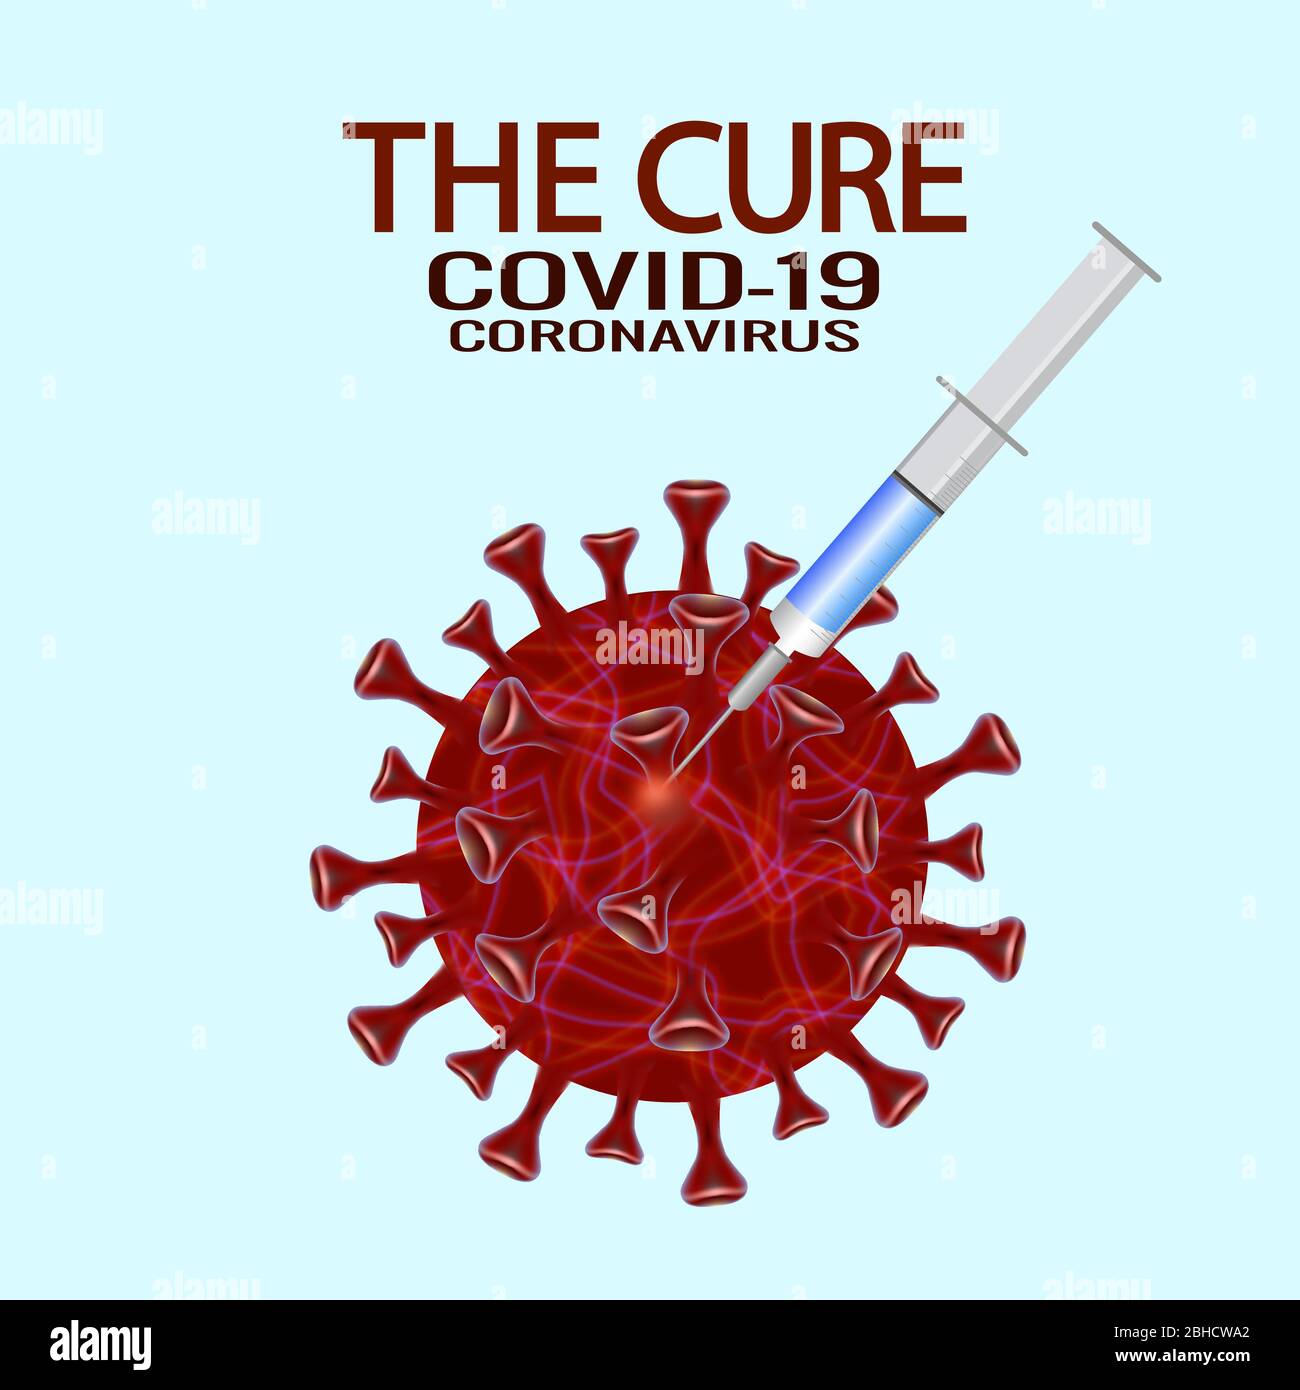 COVID-19 Pandemie: Impfung oder Heilungskonzept. COVID-19 Virus-Impfstoff, Spritzenspritze, Prävention, Immunisierung, Heilung und Behandlung für Coronavirus-Infektion. EPS 10 Vektorgrafik. Stock Vektor